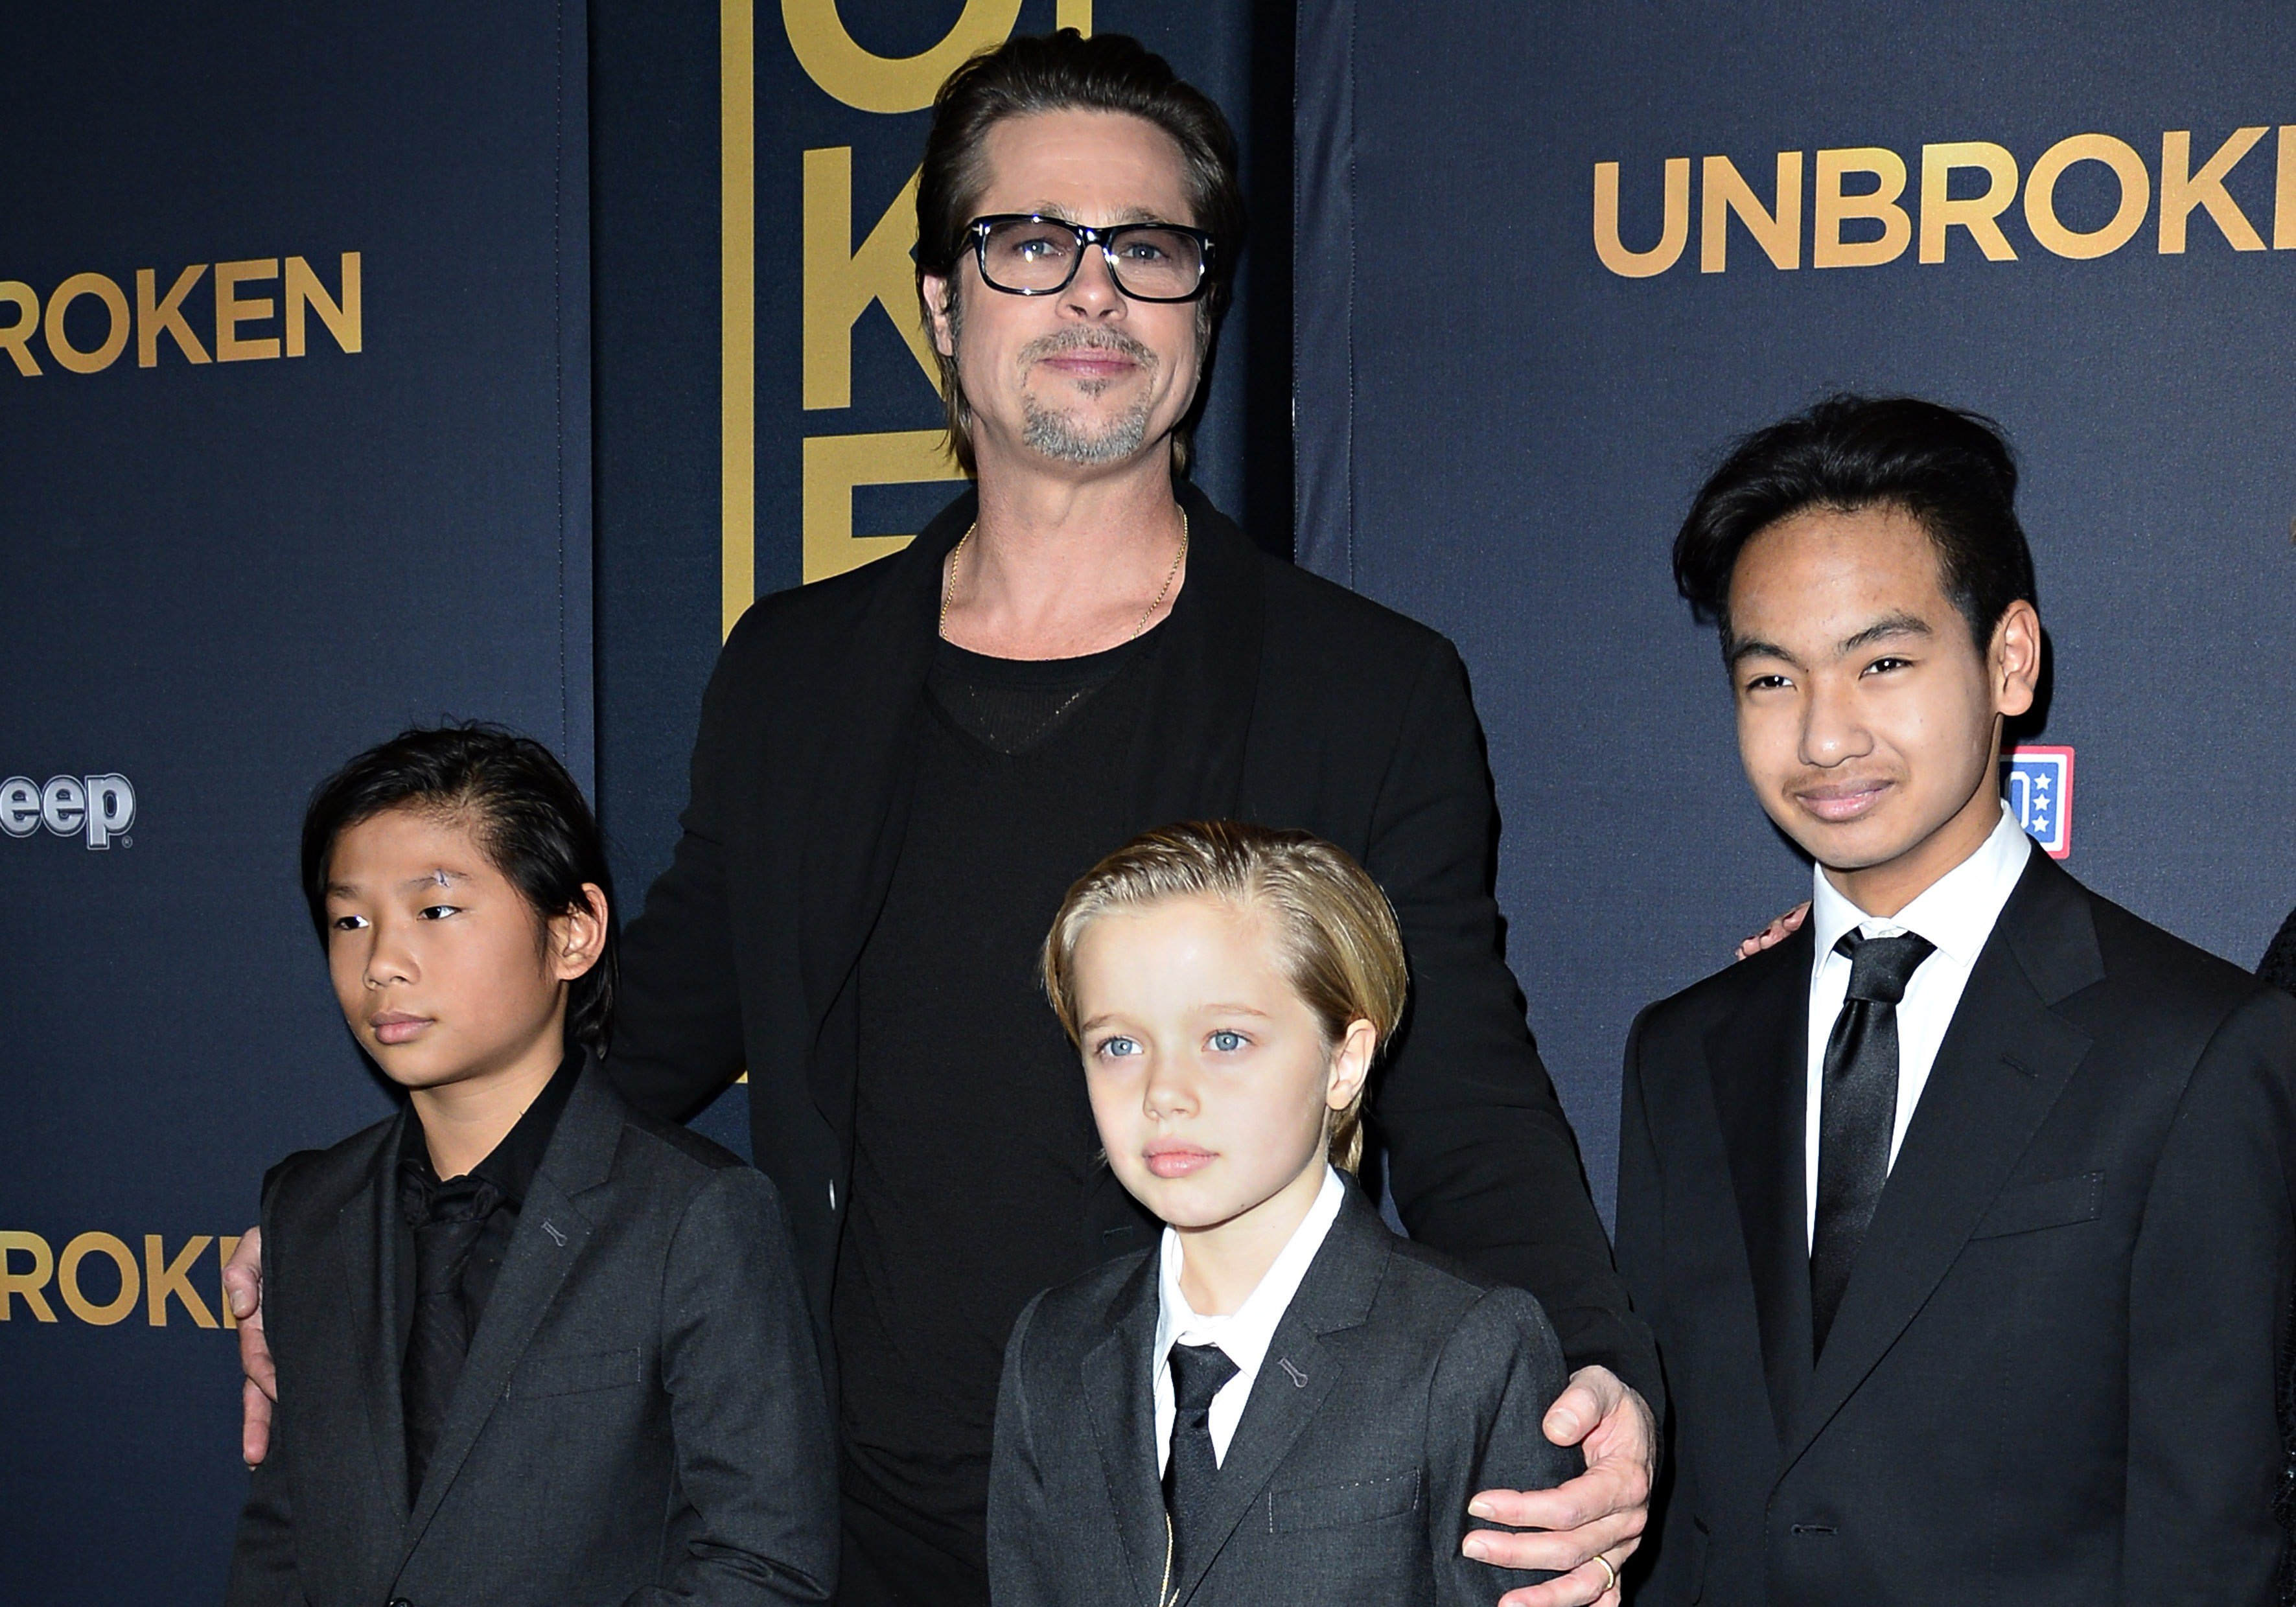 Brad Pit, Pax, Shiloh y Maddox Jolie-Pitt en el estreno en EE.UU. de "Unbroken", el 15 de diciembre de 2014, en Hollywood, California | Foto: Getty Images